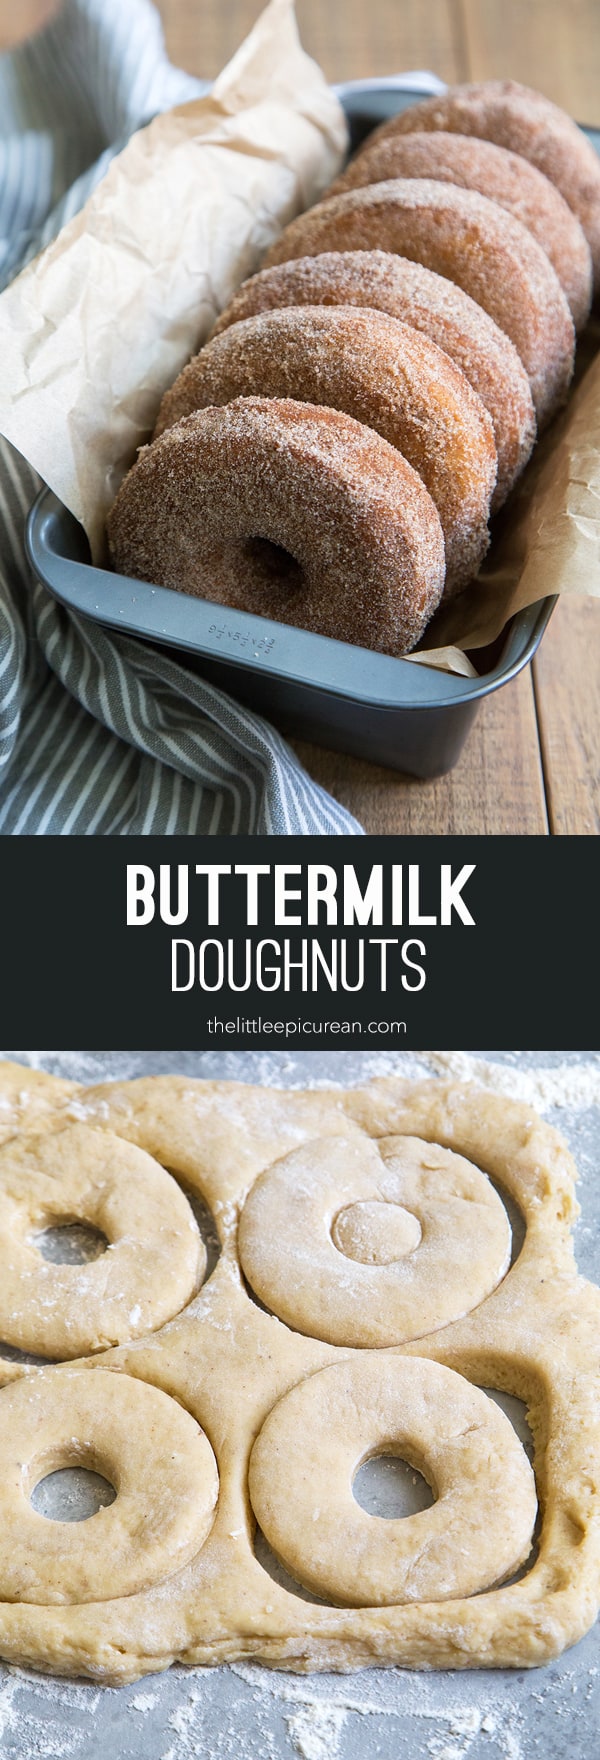 Buttermilk Doughnuts